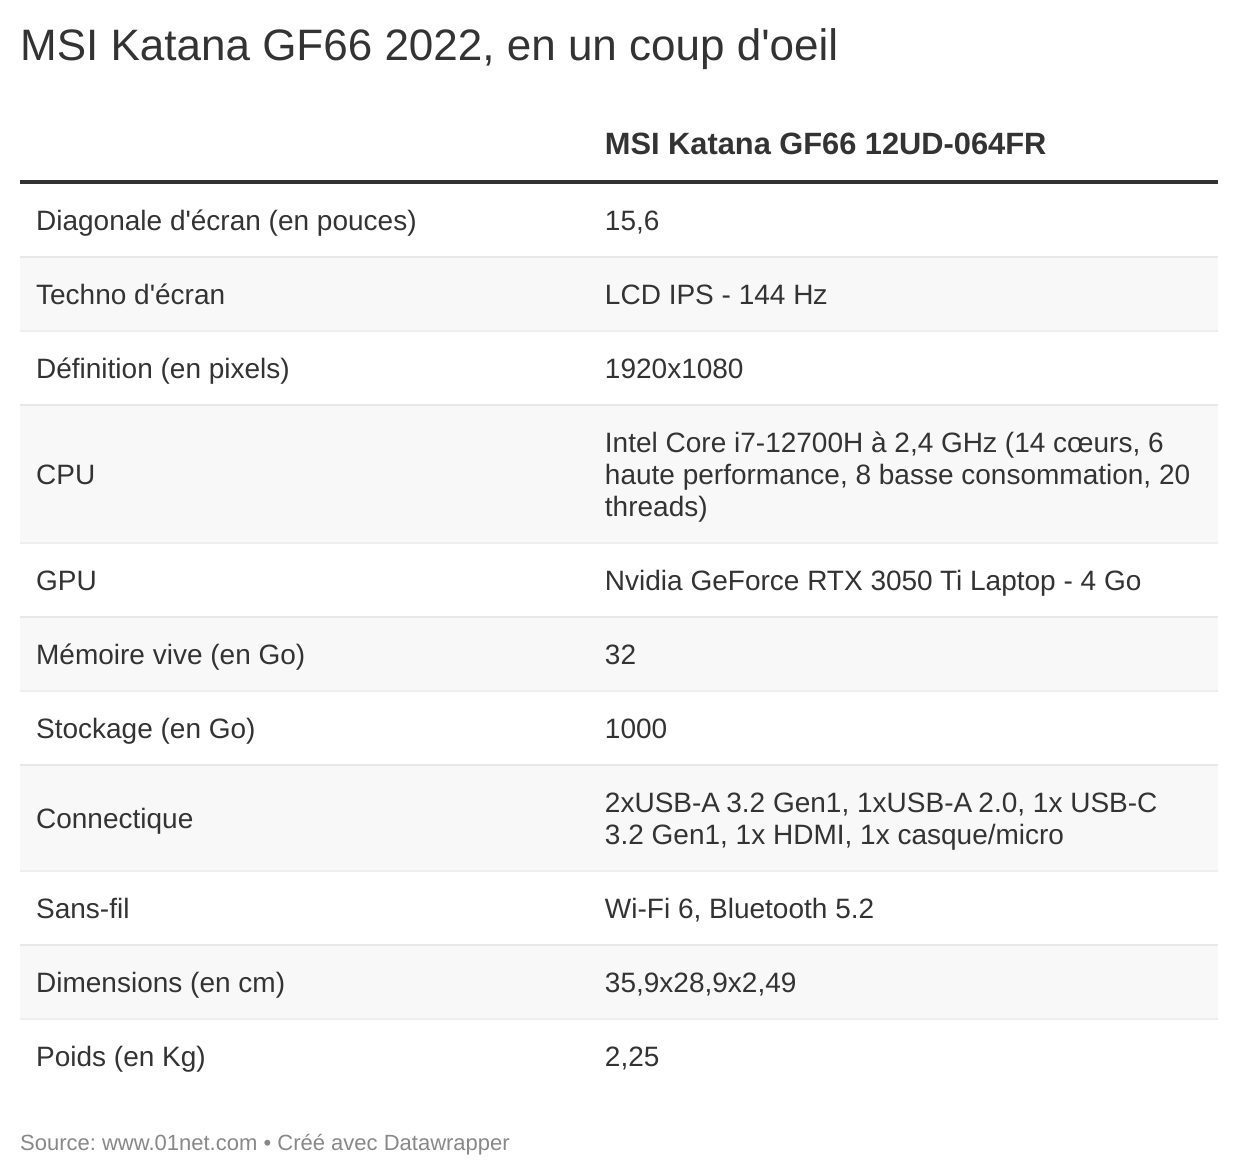 Soldes PC : Le MSI Katana GF76 passe sous la barre des 1000 euros